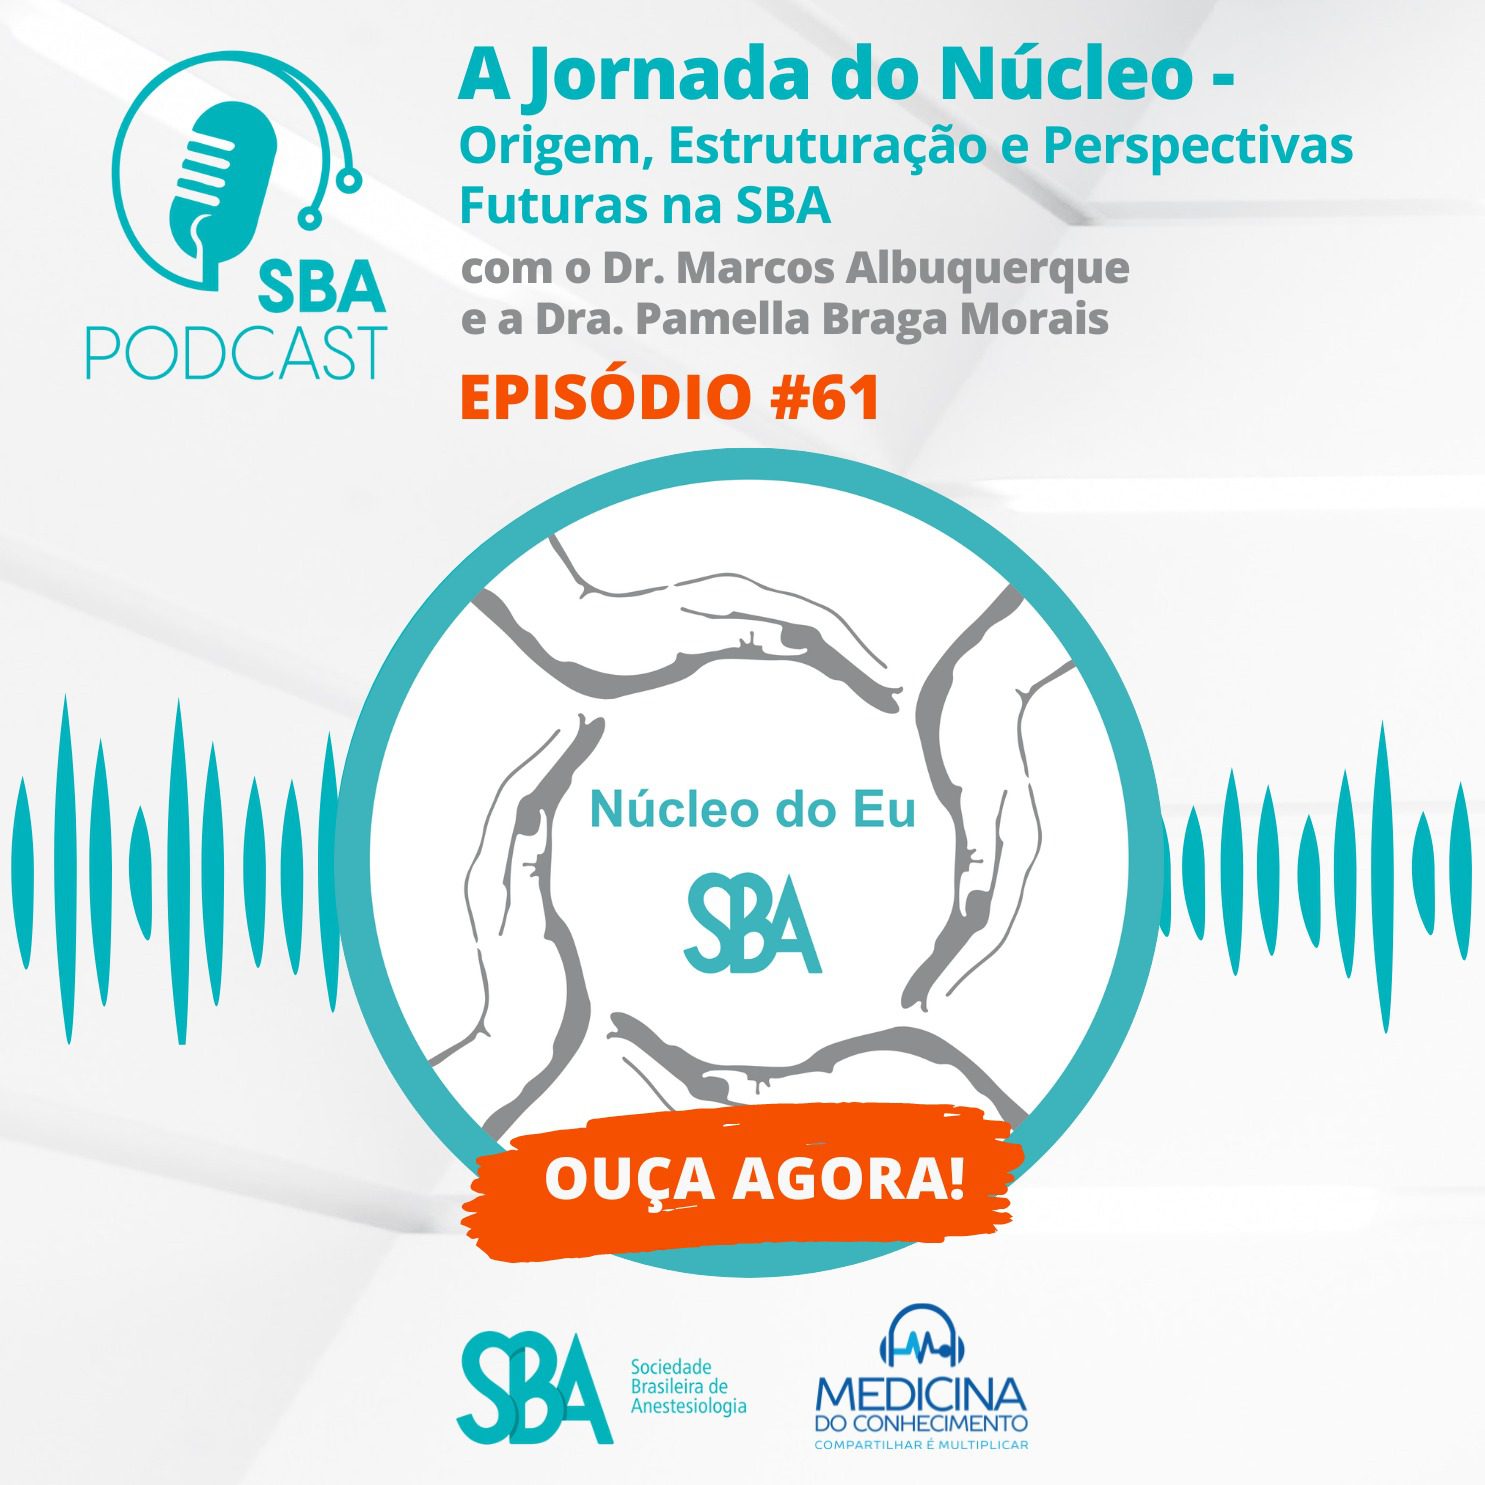 SBA Podcast EP#61 – A Jornada do Núcleo – Origem, Estruturação e Perspectivas Futuras na SBA